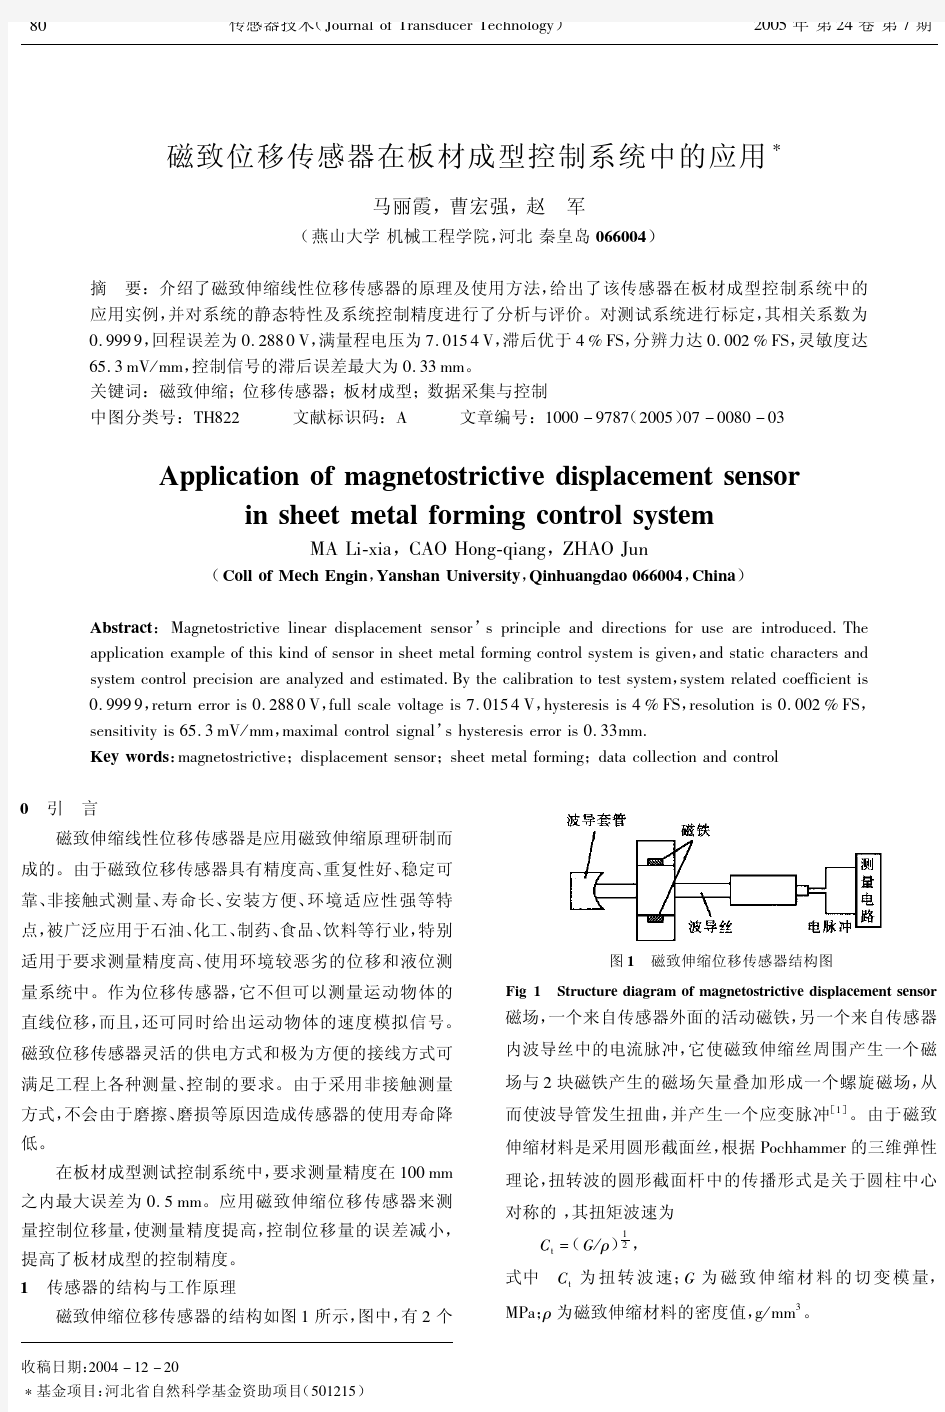 磁致位移传感器在板材成型控制系统中的应用--【汉魅HanMei—课程讲义论文分享】